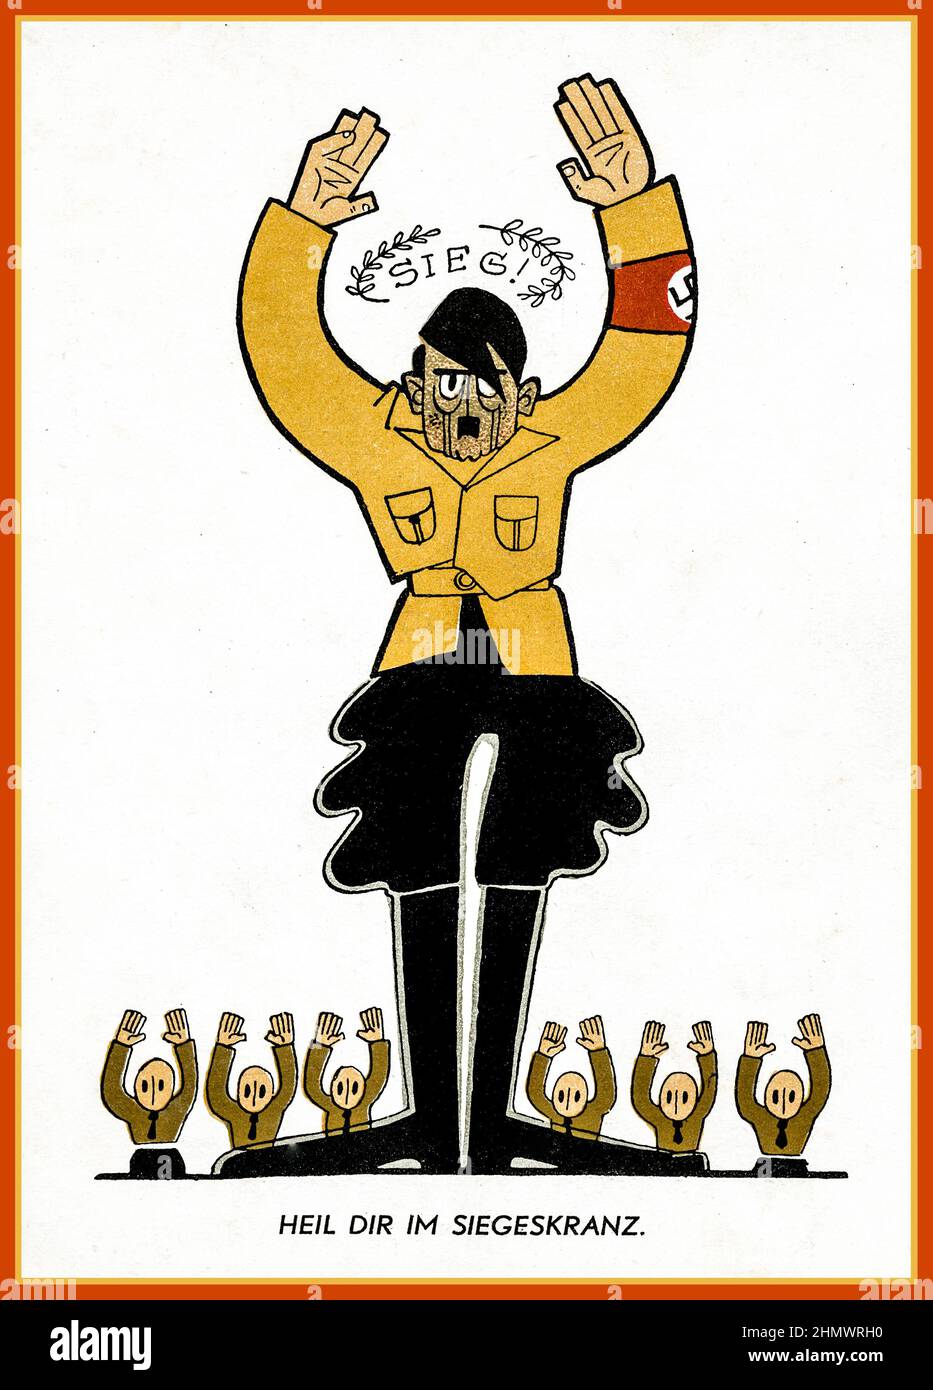 Vintage 1930s caricature de propagande anti-nazie d'Adolf Hitler dans Sturmabteilung uniforme avec le titre 'SIEG' 'Victory' Heil dir im siegeskranz, 'Hail to You dans la couronne de la victoire' Adolf Hitler et collègues ont leurs mains en capitulation Banque D'Images